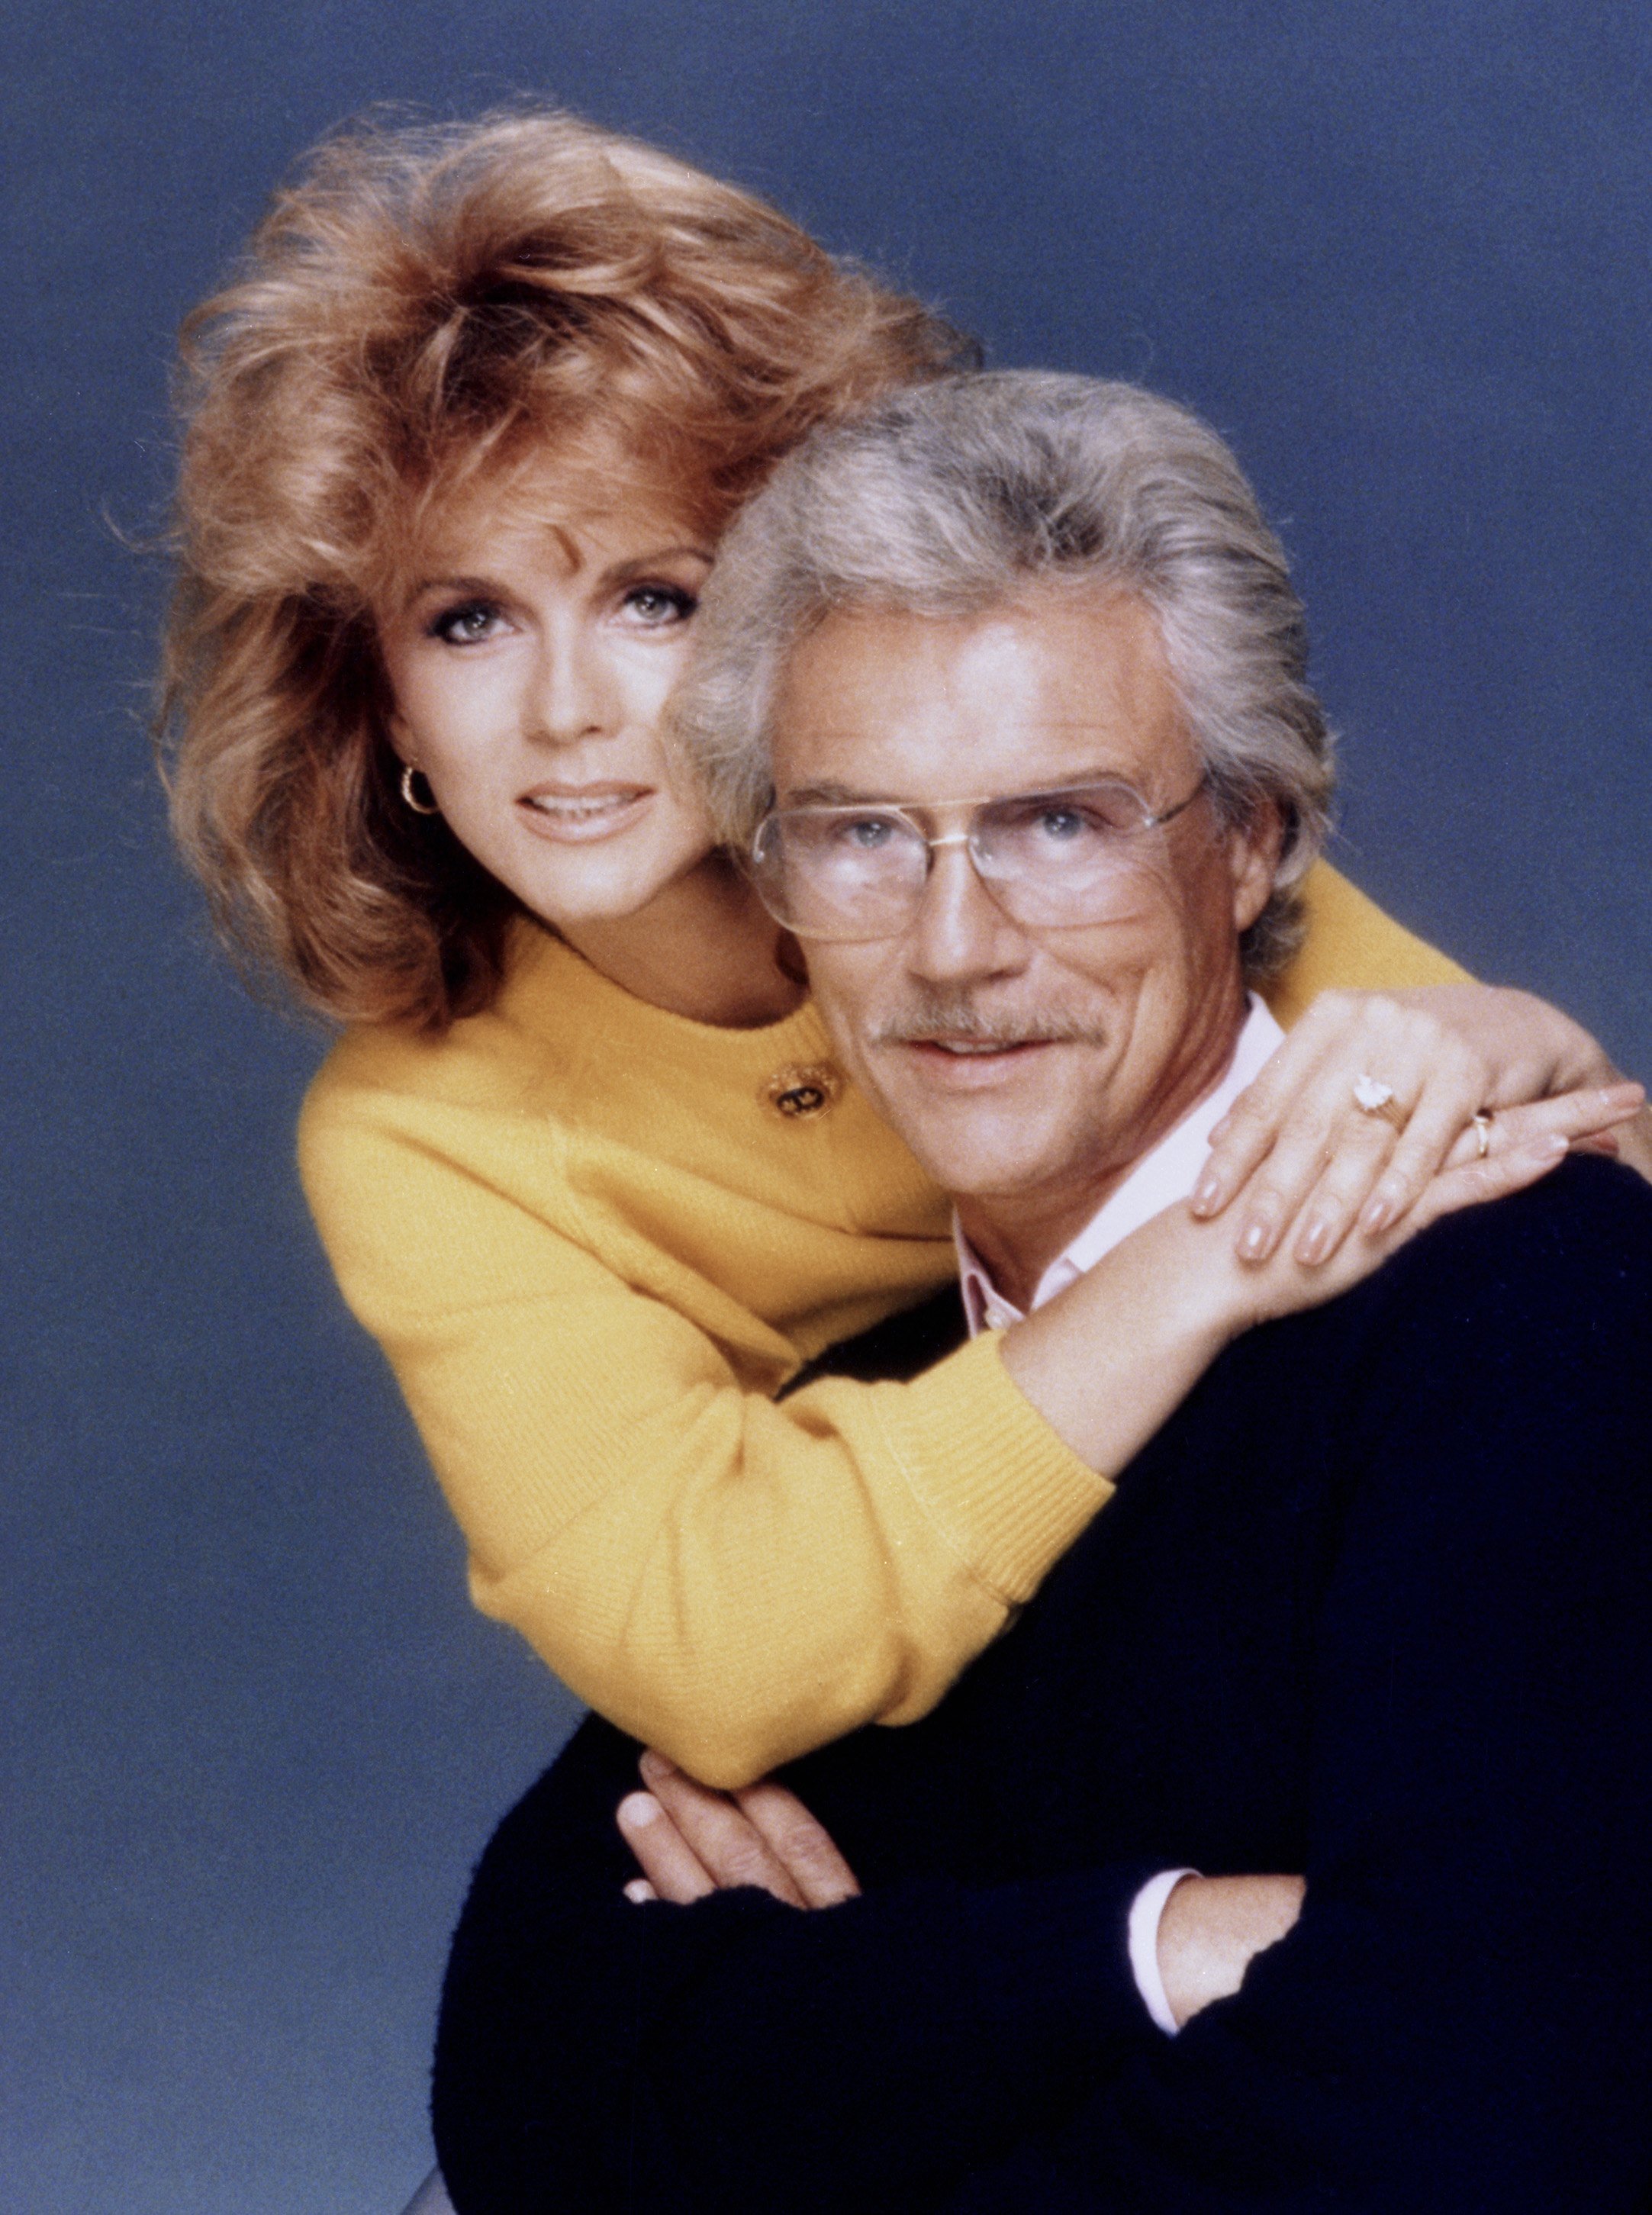 Ann-Margret und Roger Smith posieren 1985 in Los Angeles, Kalifornien, für ein Porträt.  |  Quelle: Getty Images